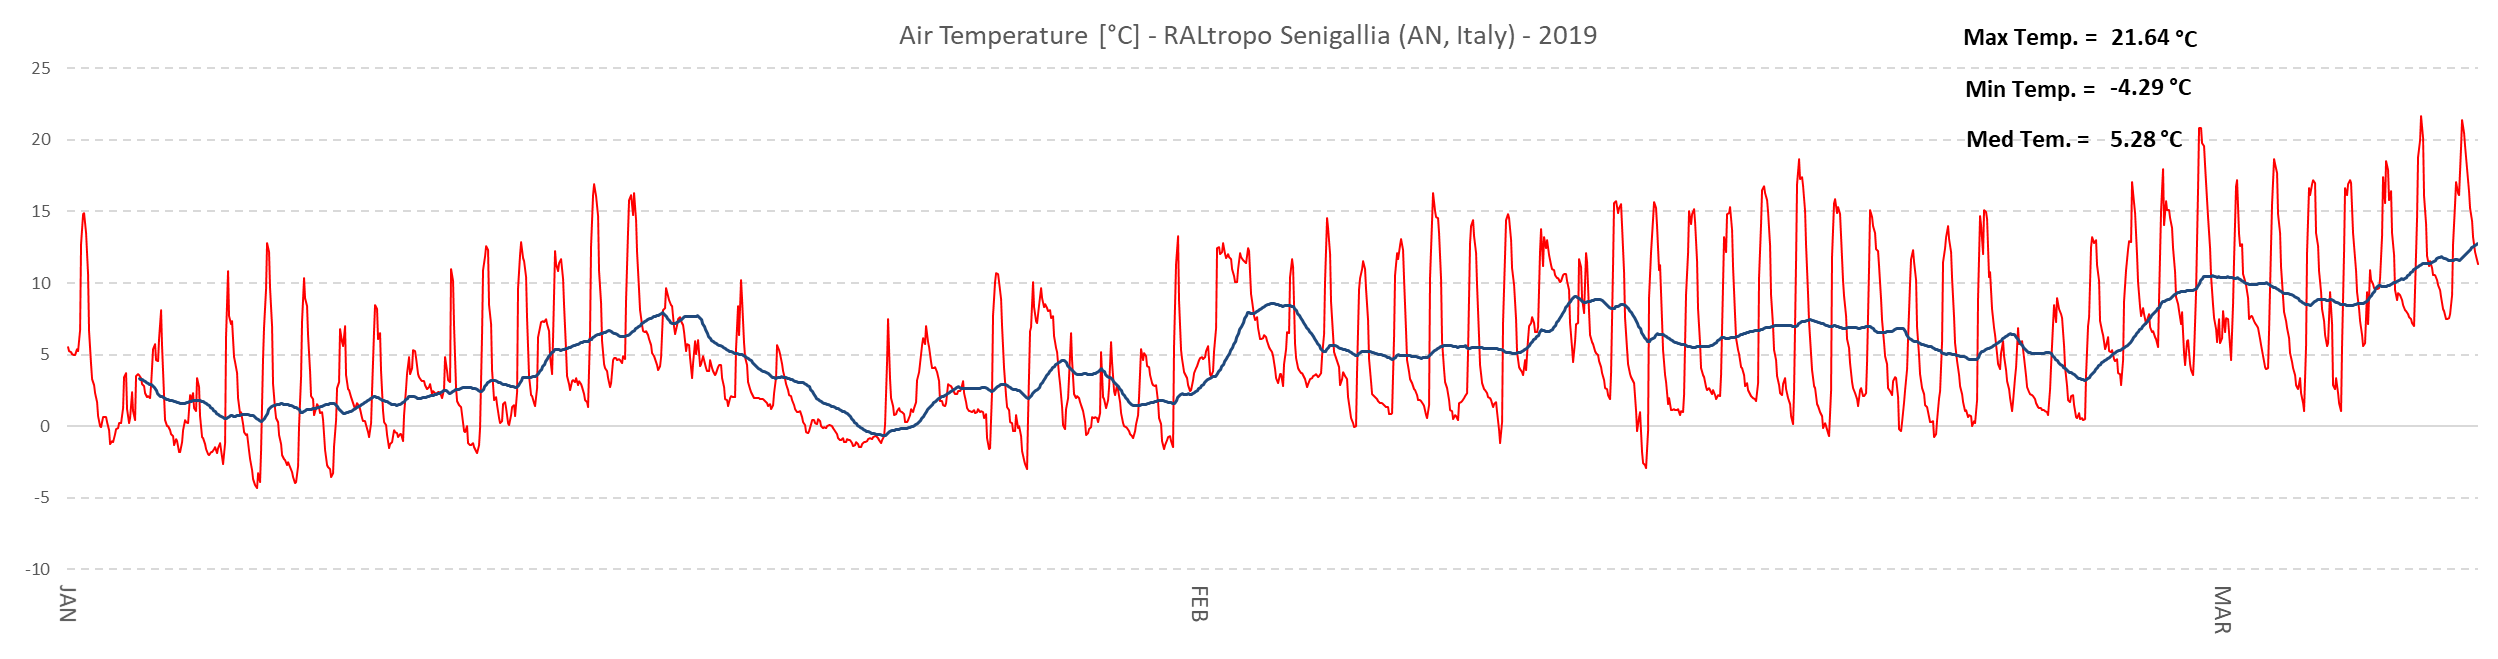 Escursioni termiche giornaliere (traccia di colore rosso) e valore medio della temperatura esterna (traccia di colore blu) dal 1 Gennaio al 8 Marzo 2019.